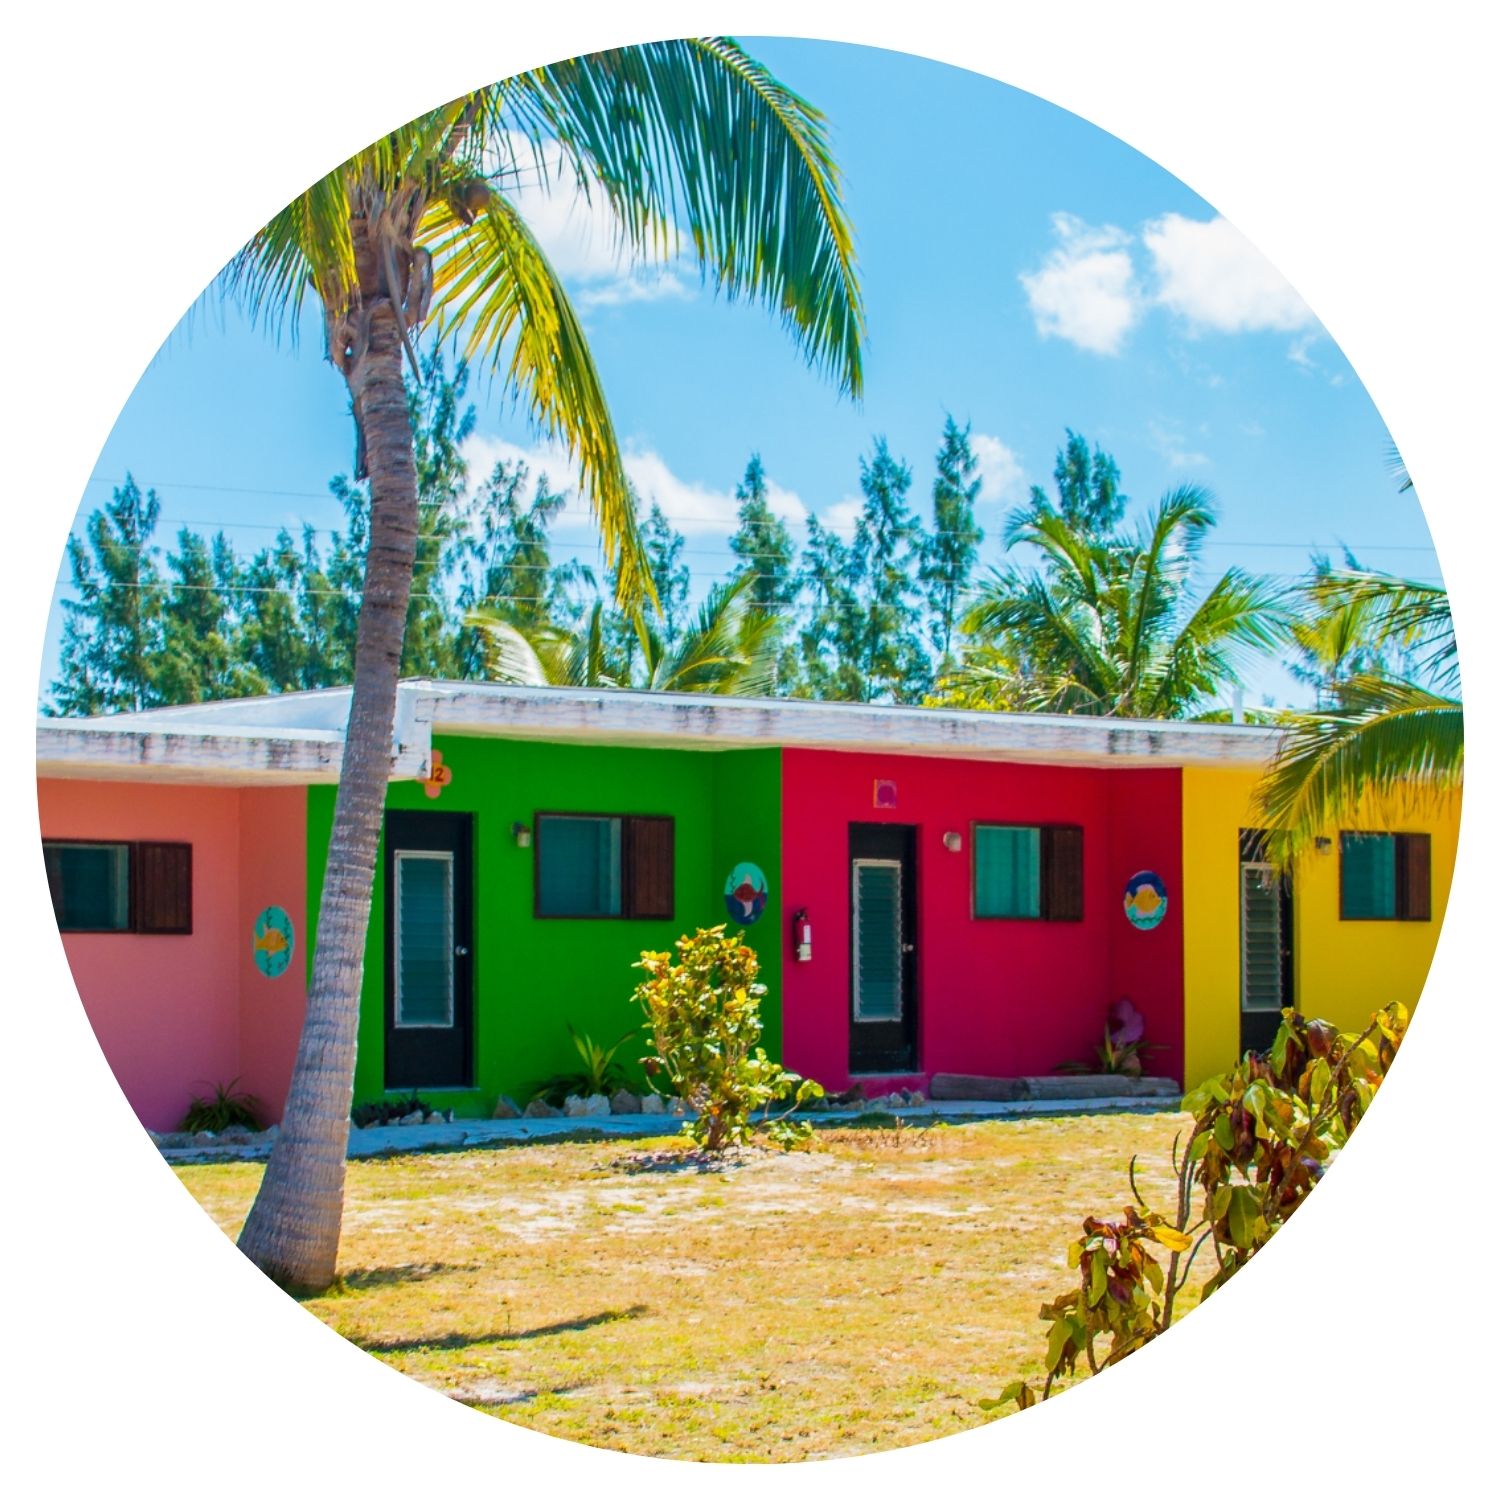 Vue pittoresque des maisons colorées alignées typiques de la Floride et des Bahamas, capturant l'essence vibrante de ces destinations ensoleillées.